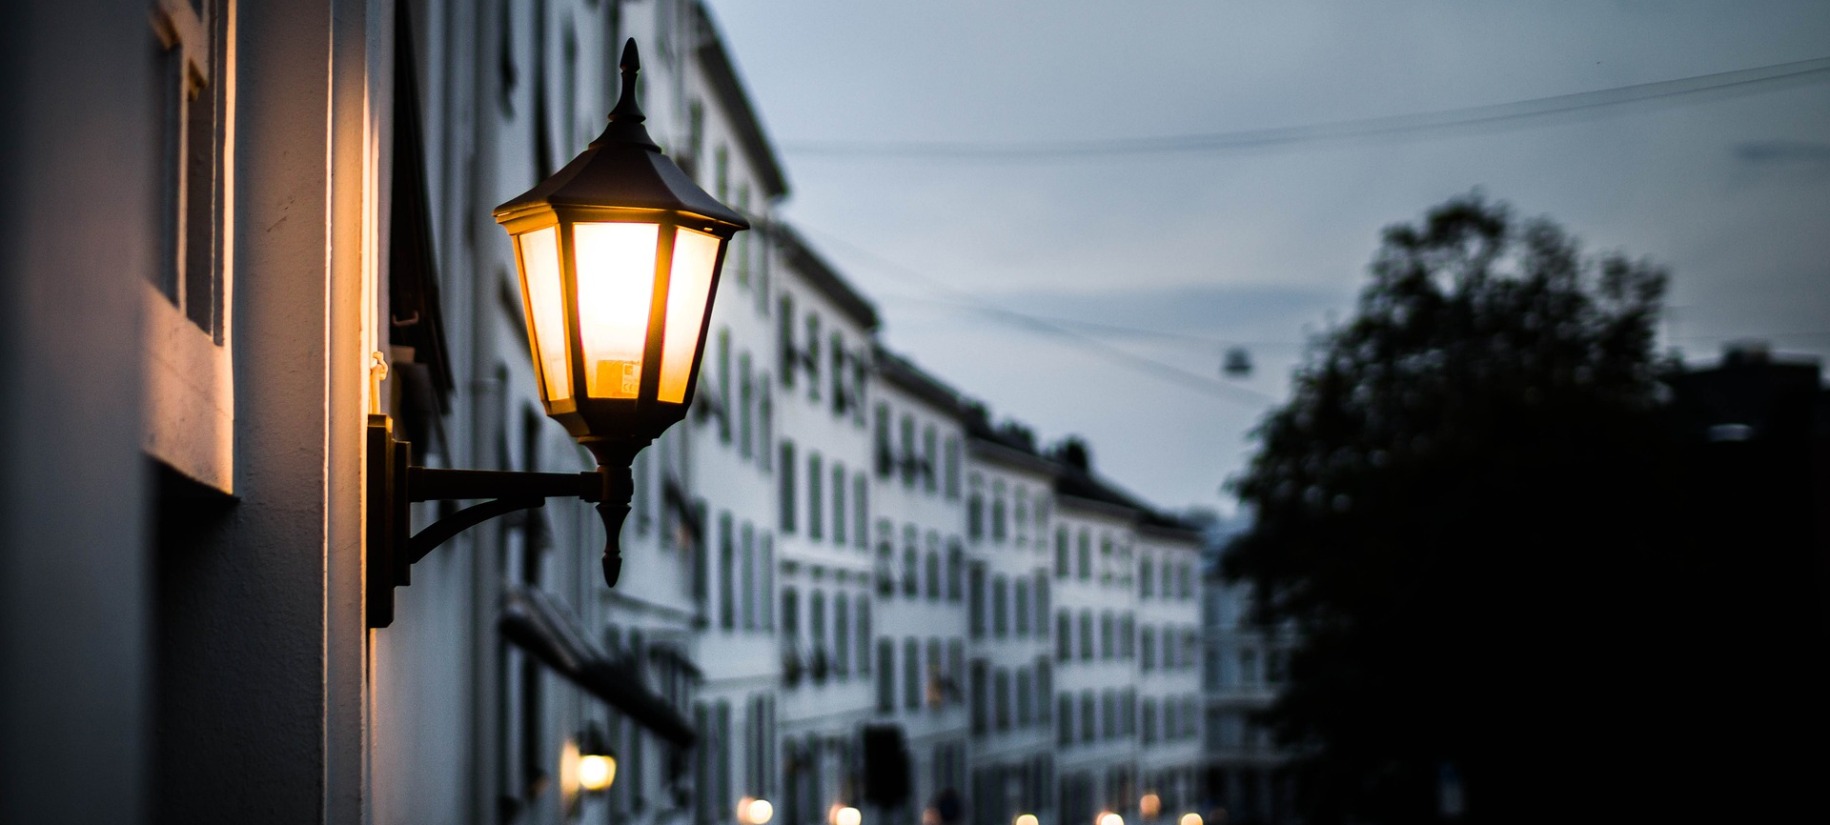 street lamp in norway